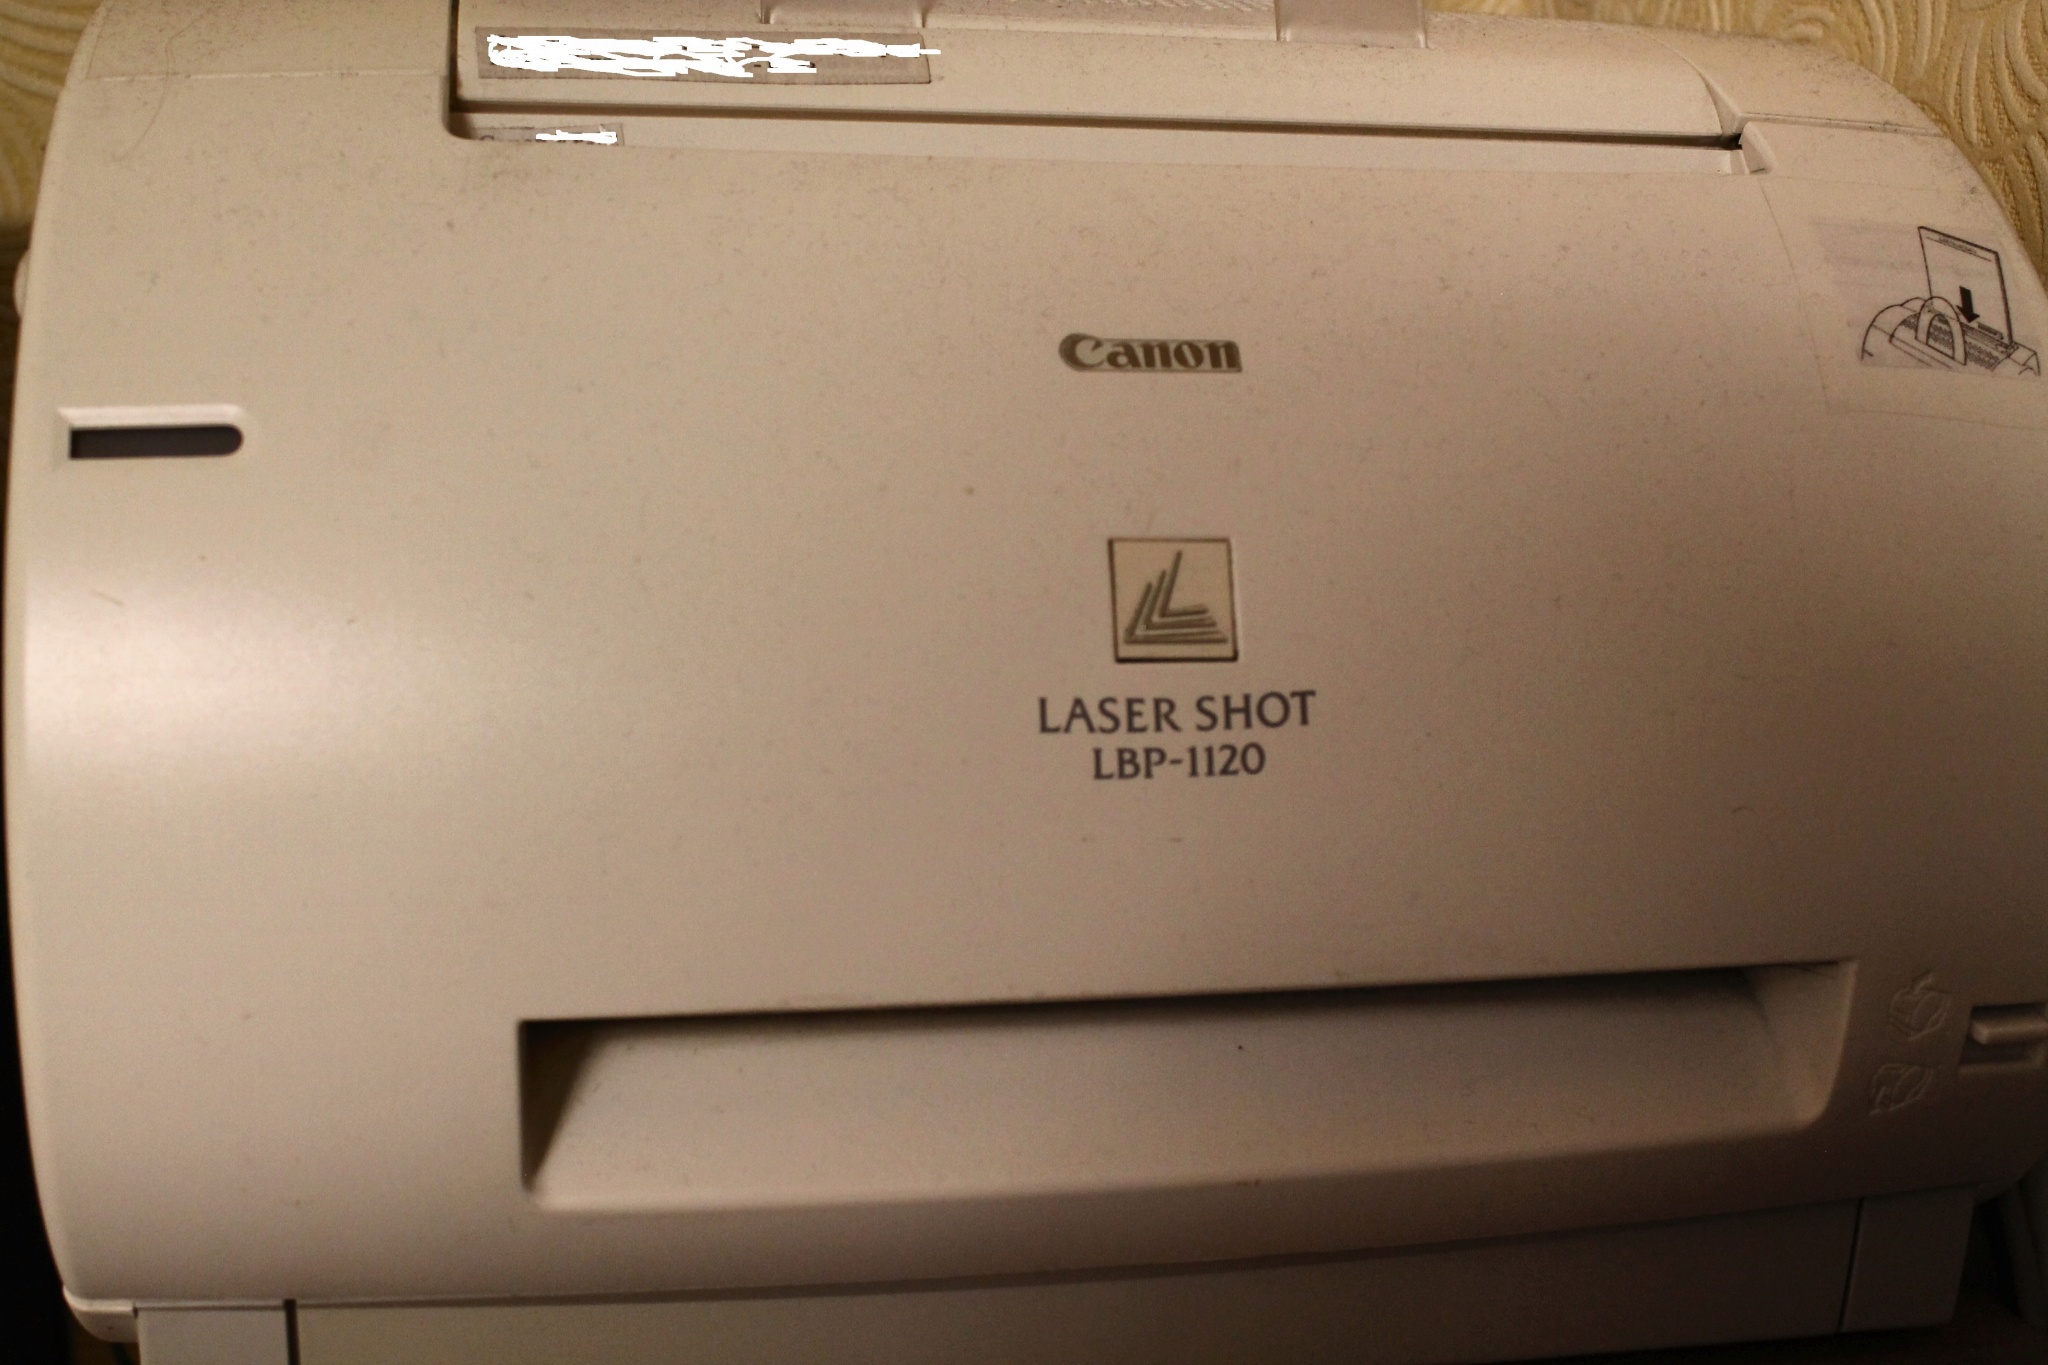 Принтер canon lbp 1120 драйвер windows 10. Принтер Canon LBP-1120. Принтер Canon LBP 810 картридж. Canon LBP 1110. Картридж для принтера Canon LBP 1120.